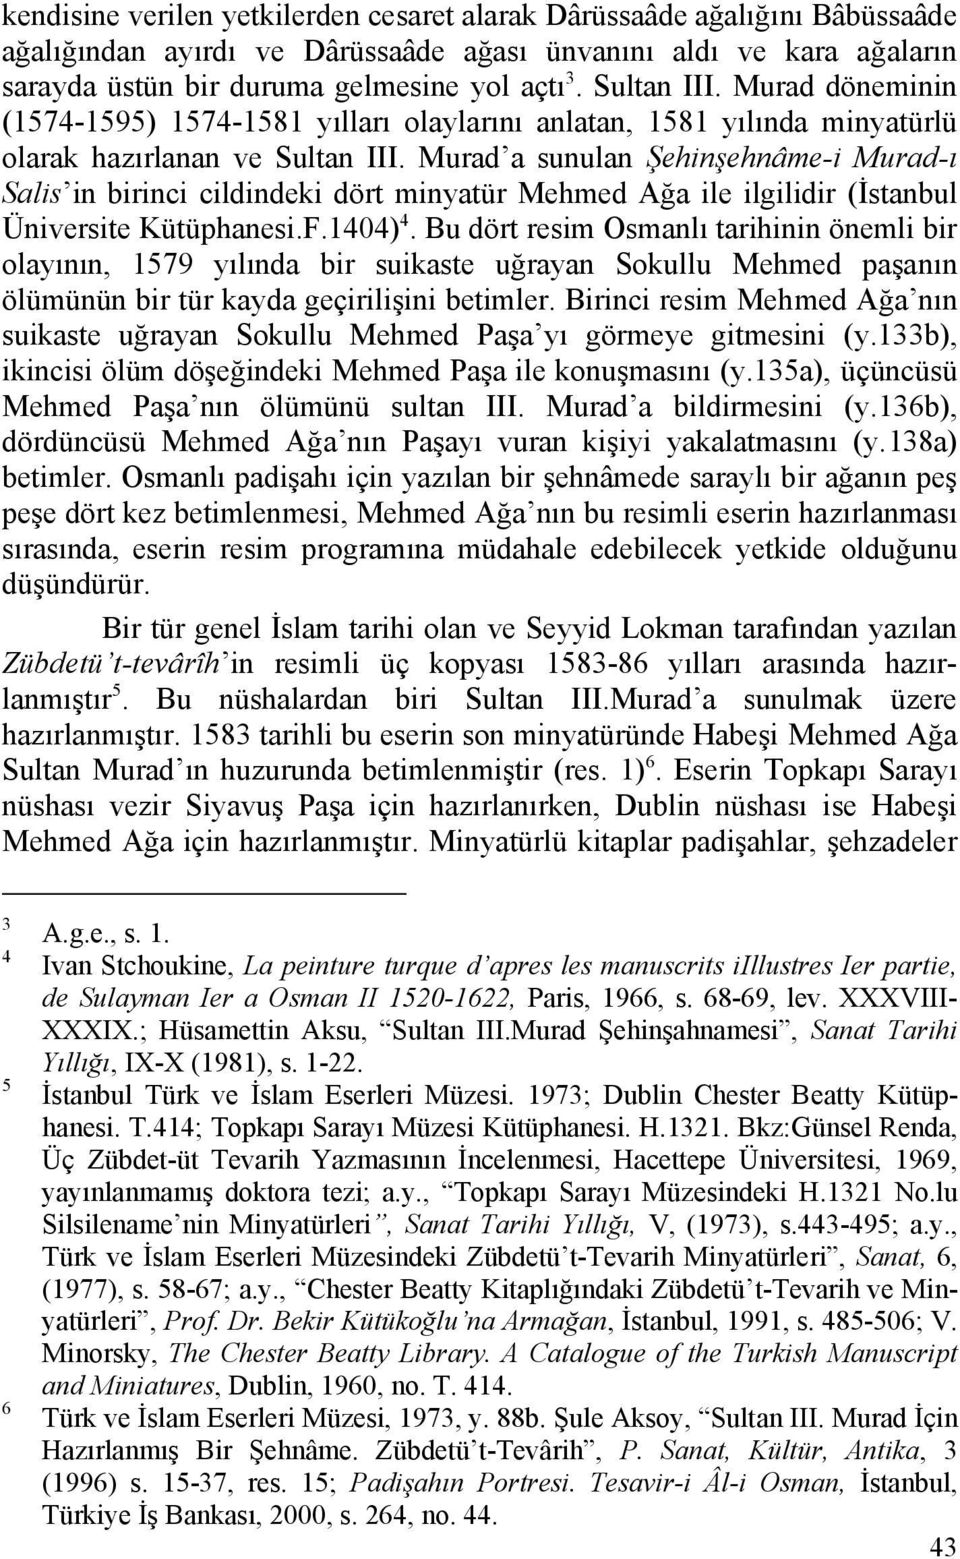 Murad a sunulan Şehinşehnâme-i Murad-ı Salis in birinci cildindeki dört minyatür Mehmed Ağa ile ilgilidir (İstanbul Üniversite Kütüphanesi.F.1404) 4.